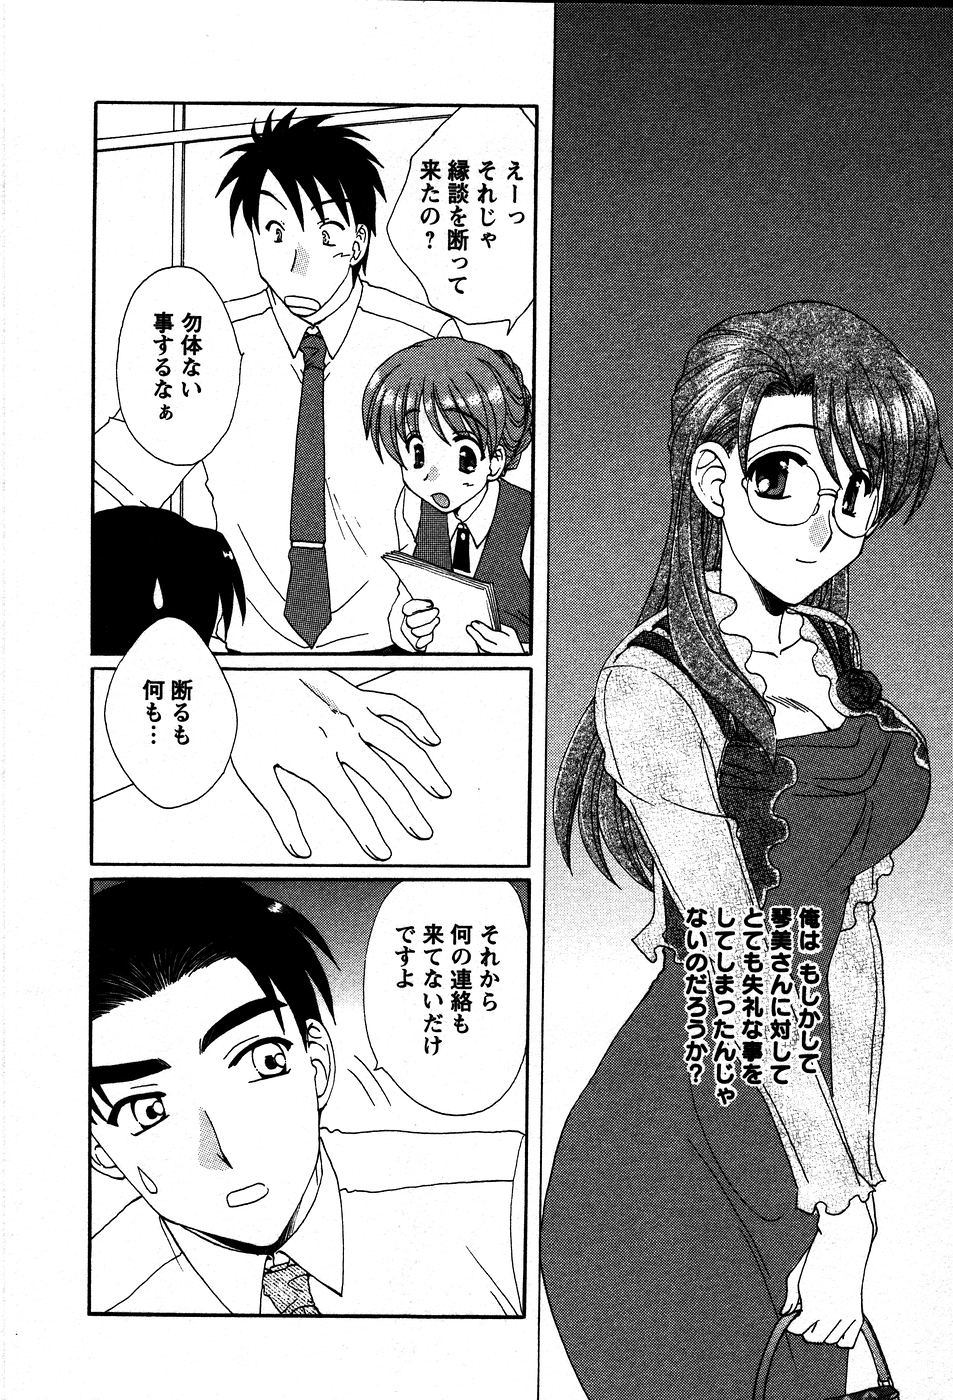 [Kurokawa Mio] Usagi no Hanayome - Rabbit Bride 52